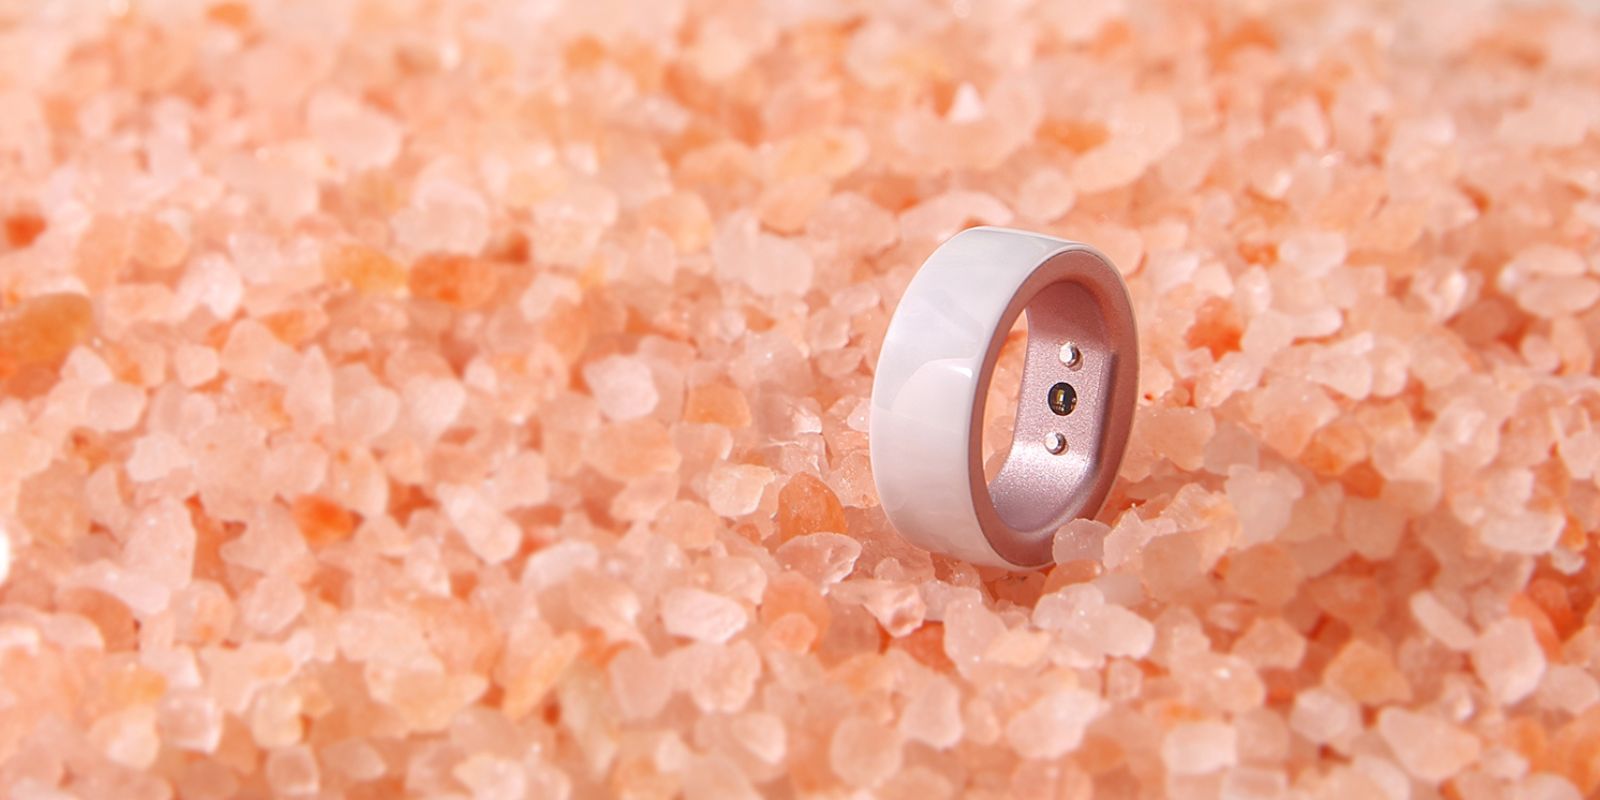 Femometer smart ring designed for women